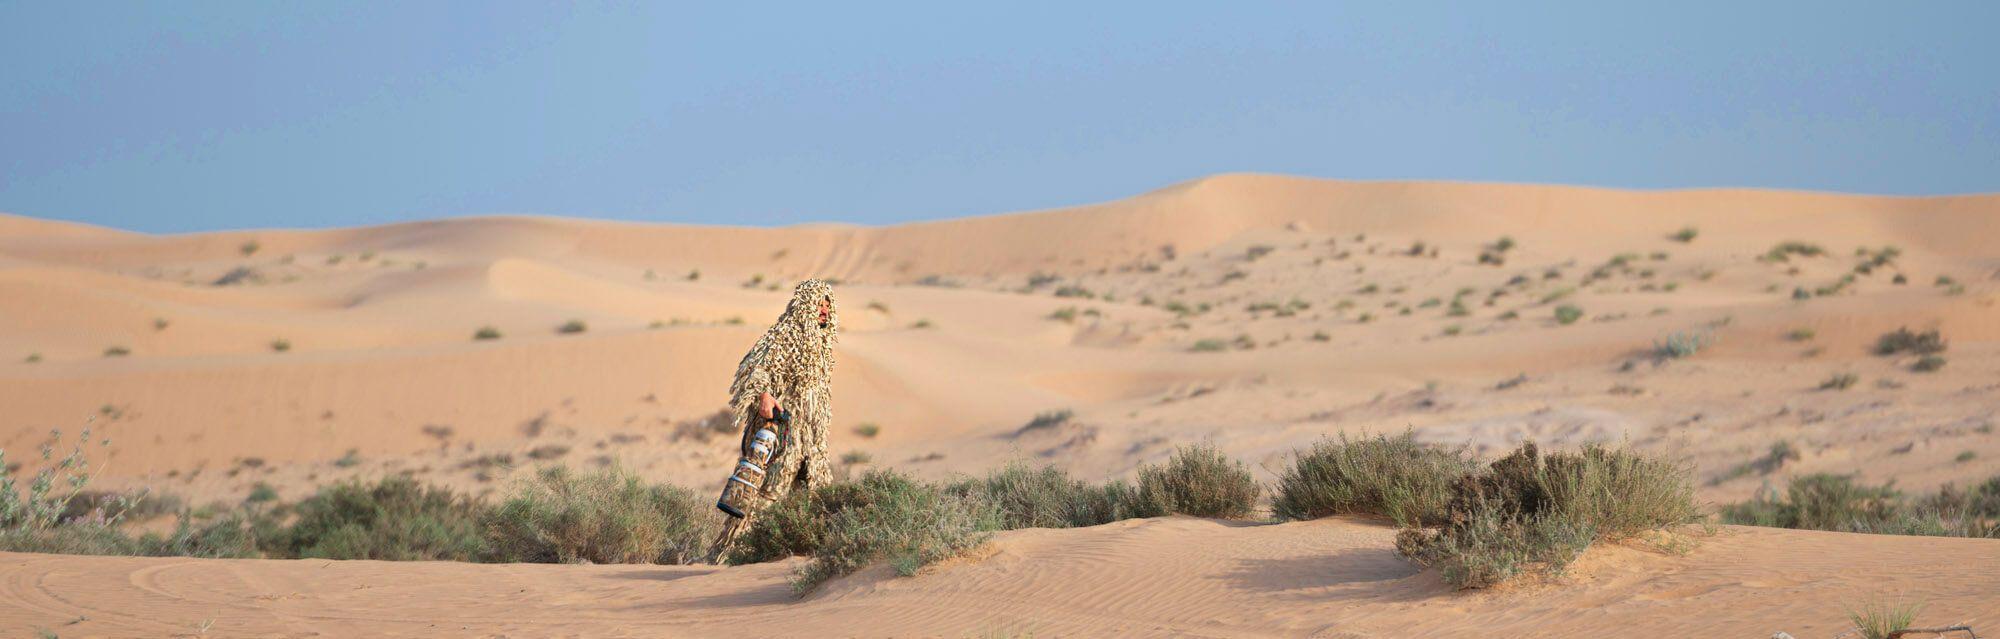 يدخل علي بن ثالث الصحراء متخفيًا ليندمج في البيئة ويصبح جزءًا منها. المصور: علي بن ثالث. الموقع: دبي، الإمارات العربية المتحدة